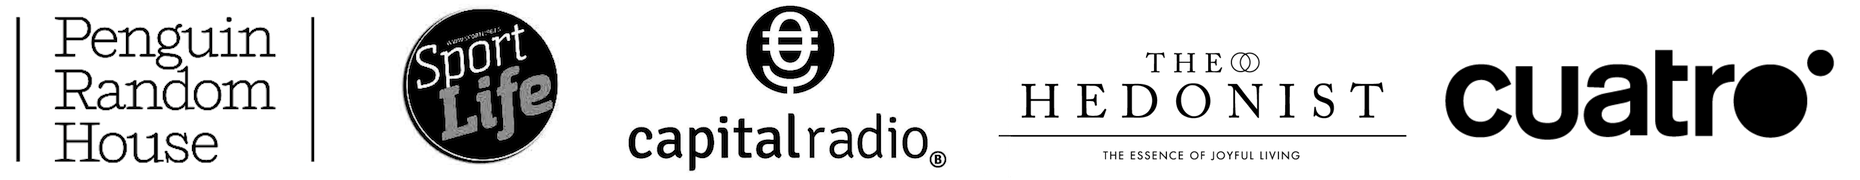 Banner de logos en color blanco y negro